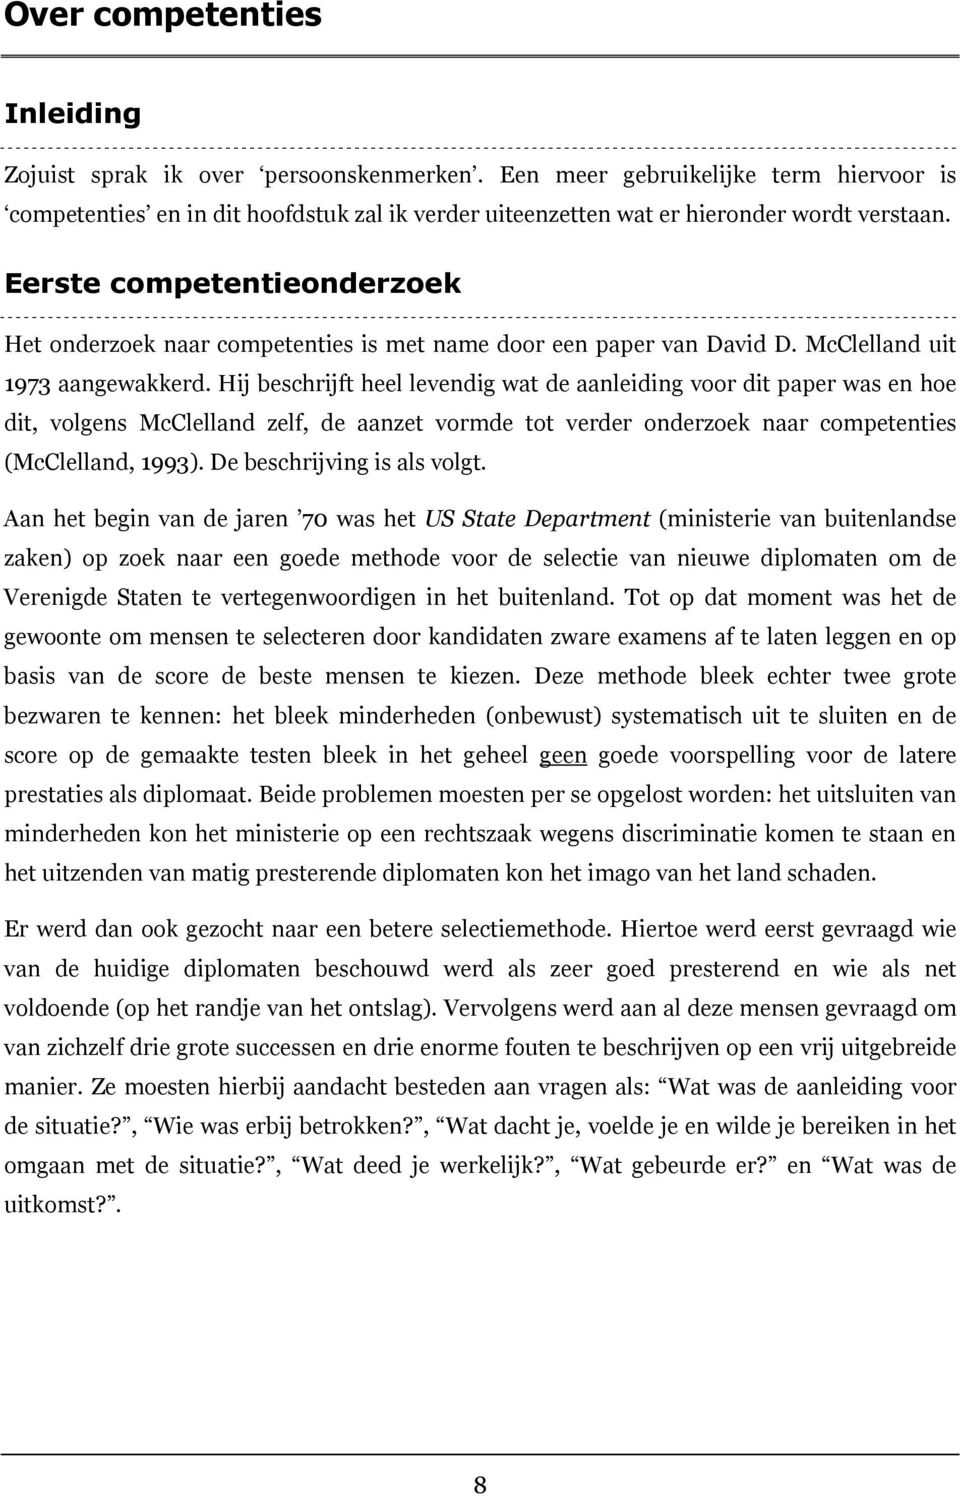 Eerste competentieonderzoek Het onderzoek naar competenties is met name door een paper van David D. McClelland uit 1973 aangewakkerd.